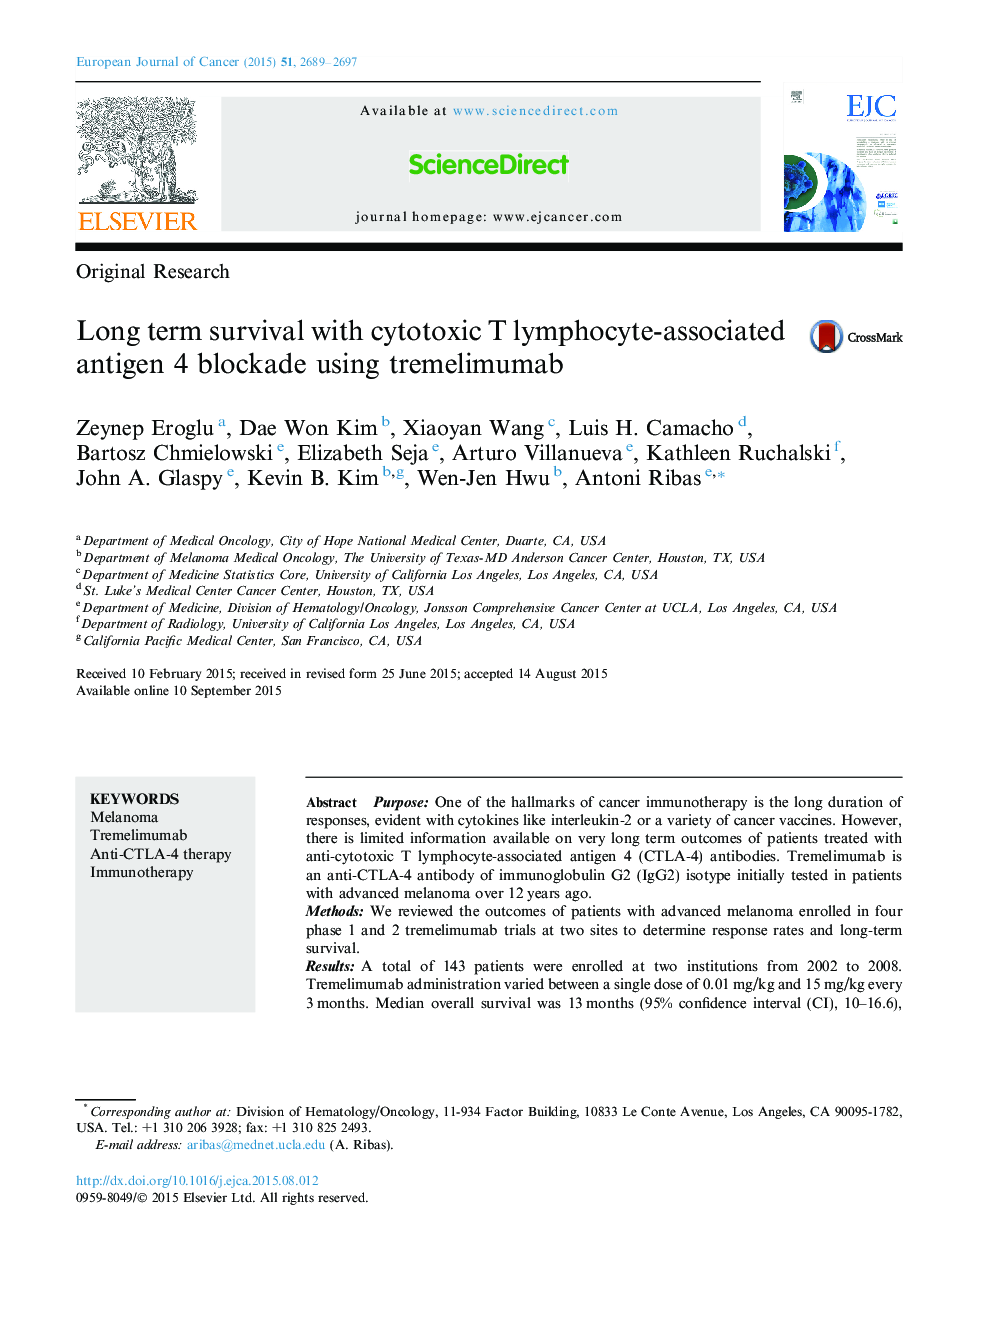 بقای طولانی مدت با آنتی ژن 4 وابسته به لنفوسیت سیتوتوکسی با استفاده از ترلیومیماب 